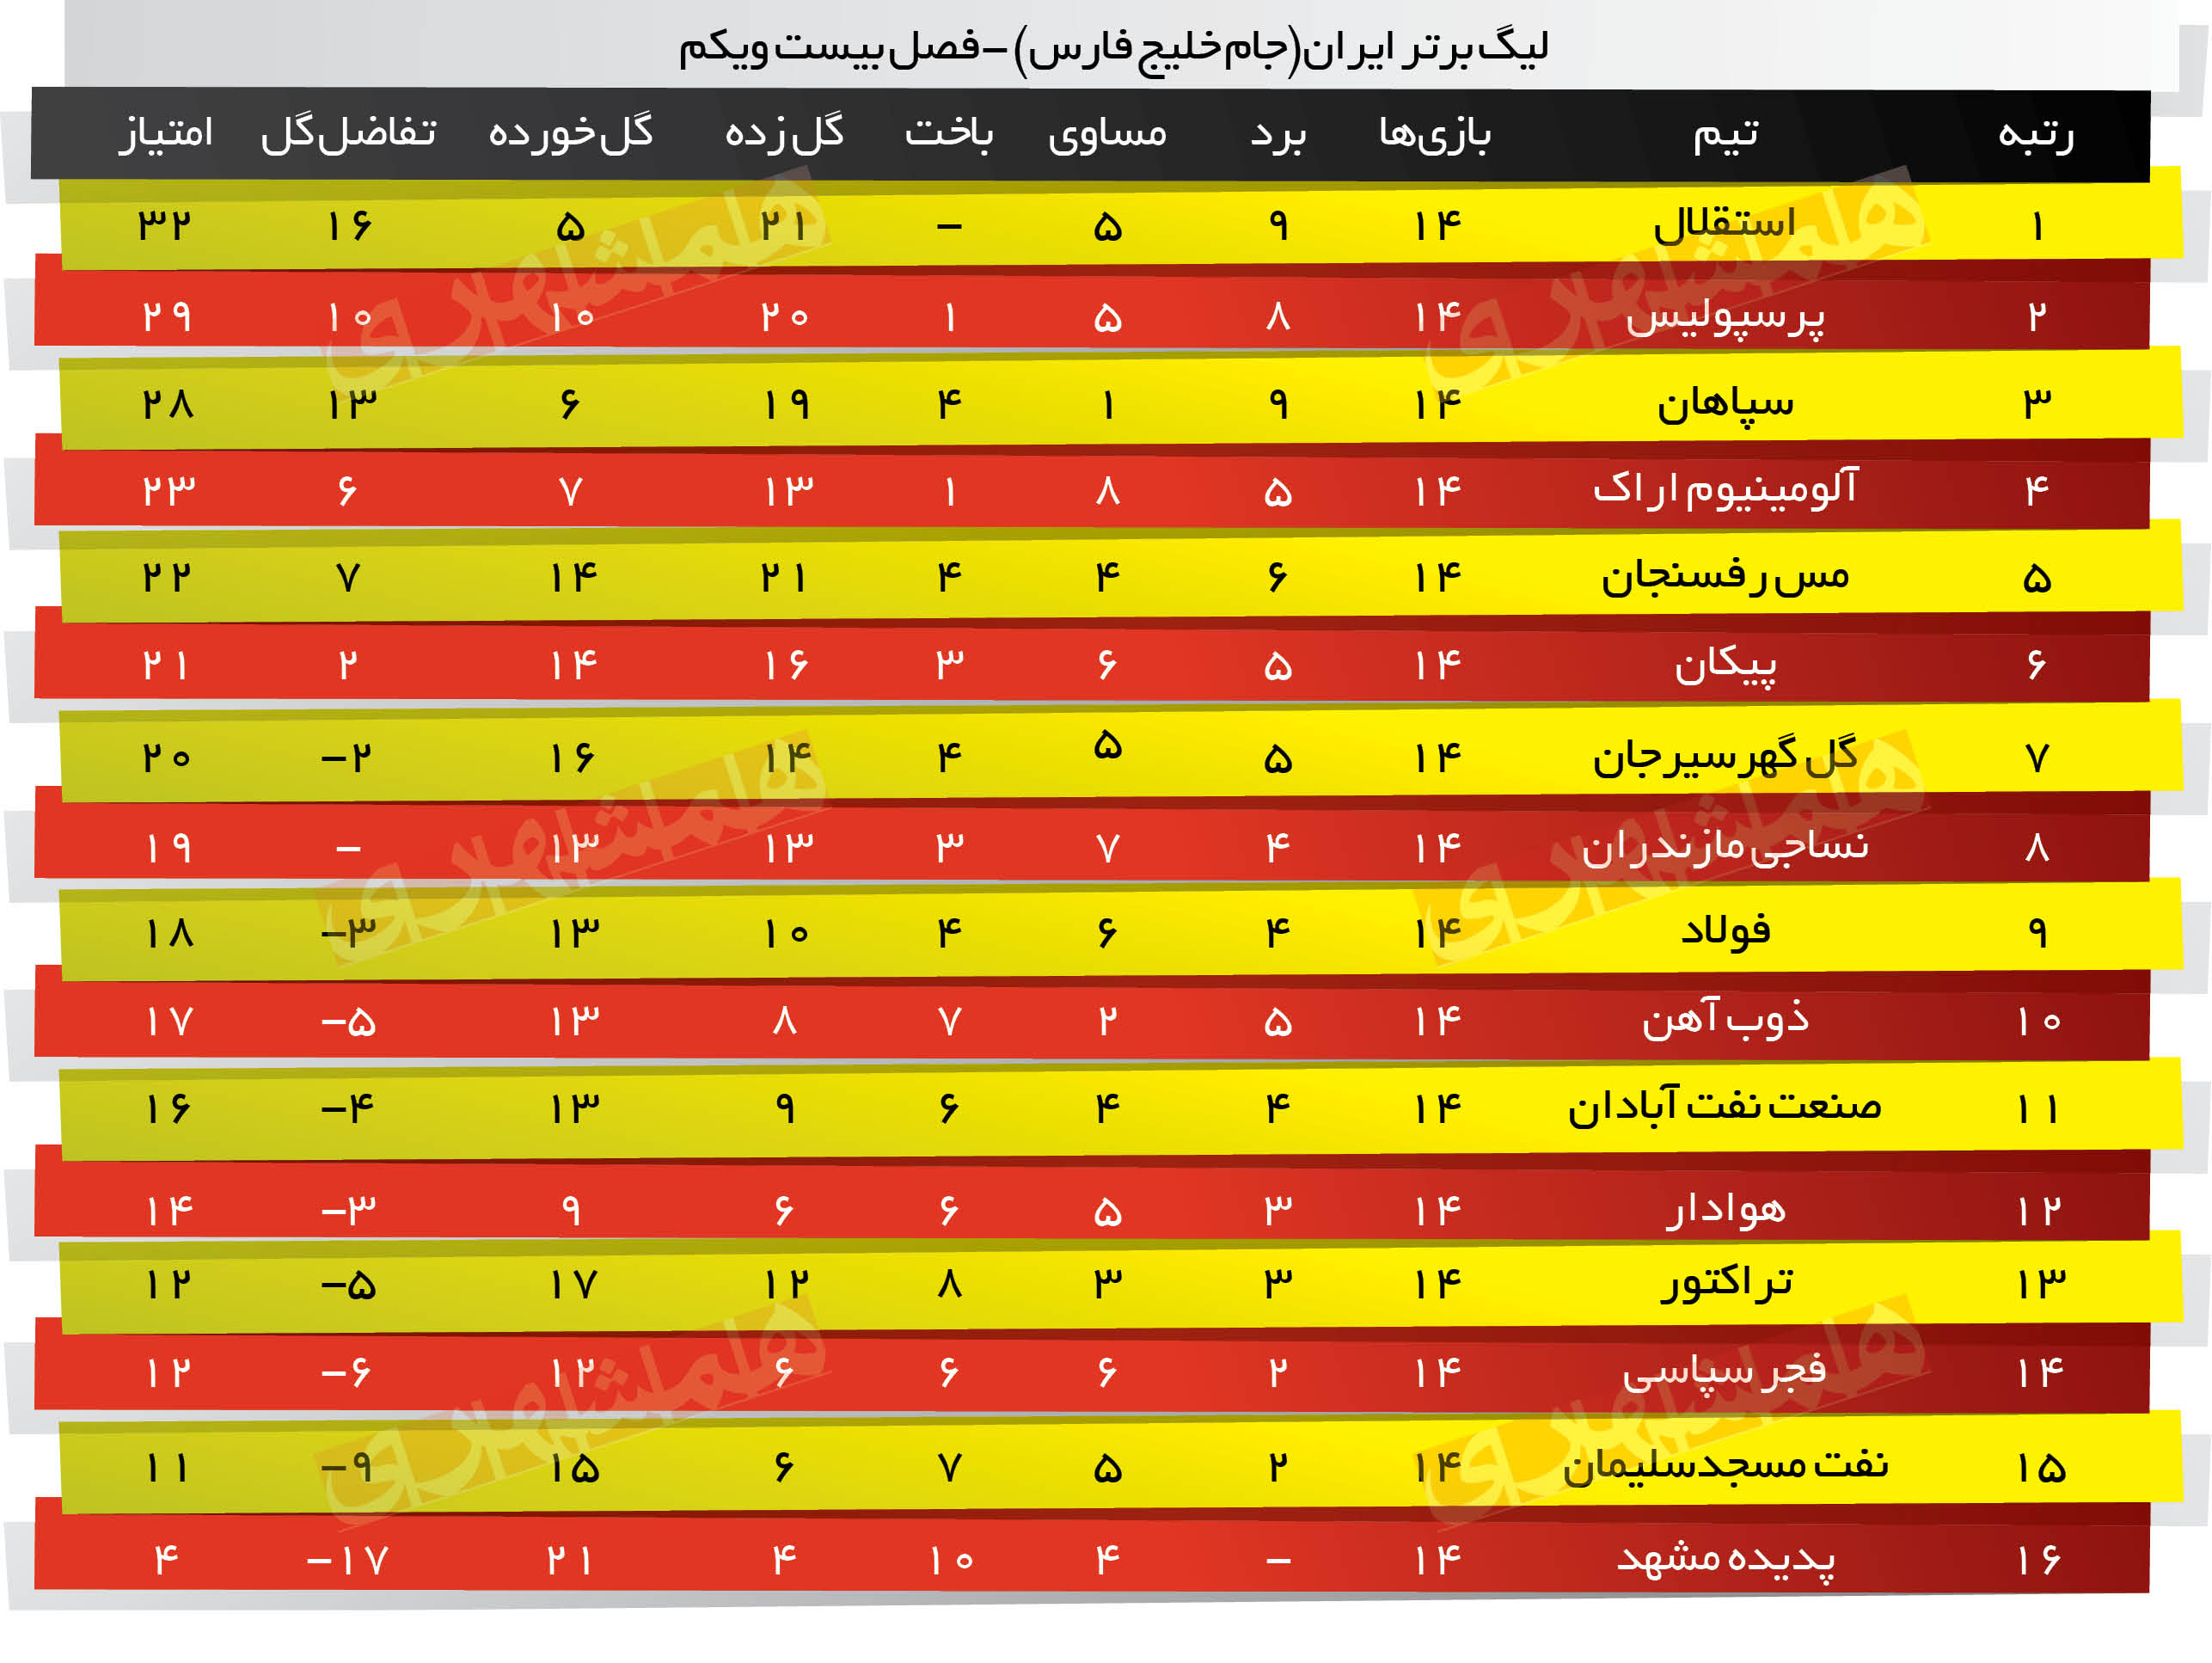 لیگ برتر ایران جام خلیج فارس -فصل بیست ویکم